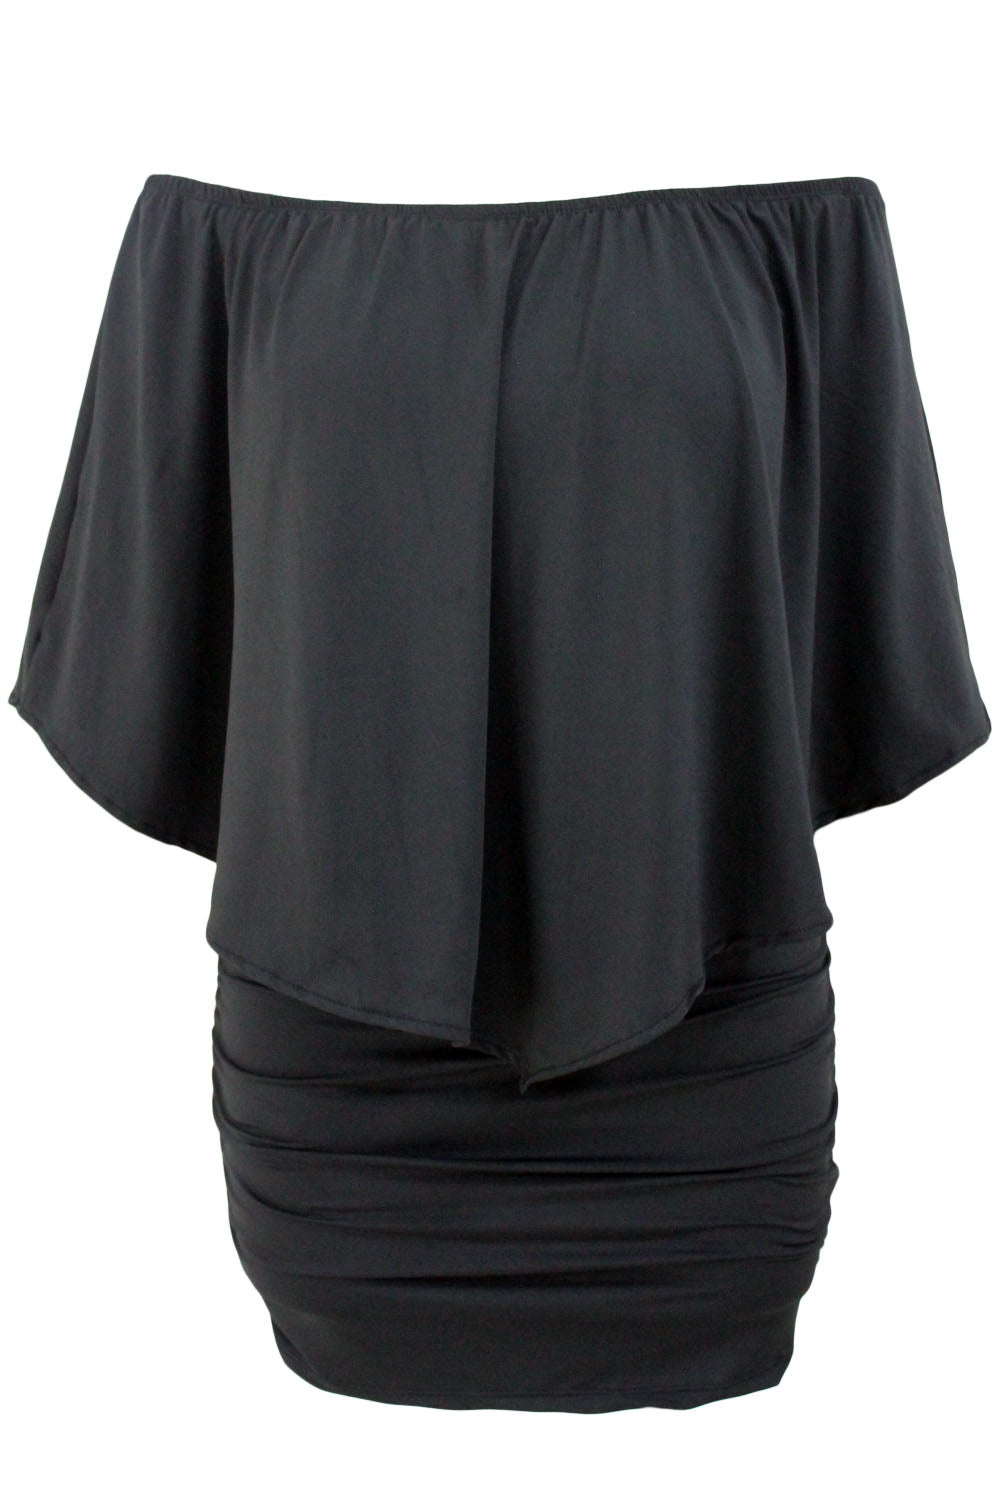 Tamnoplava mini pončo haljina s višestrukim oblačenjem